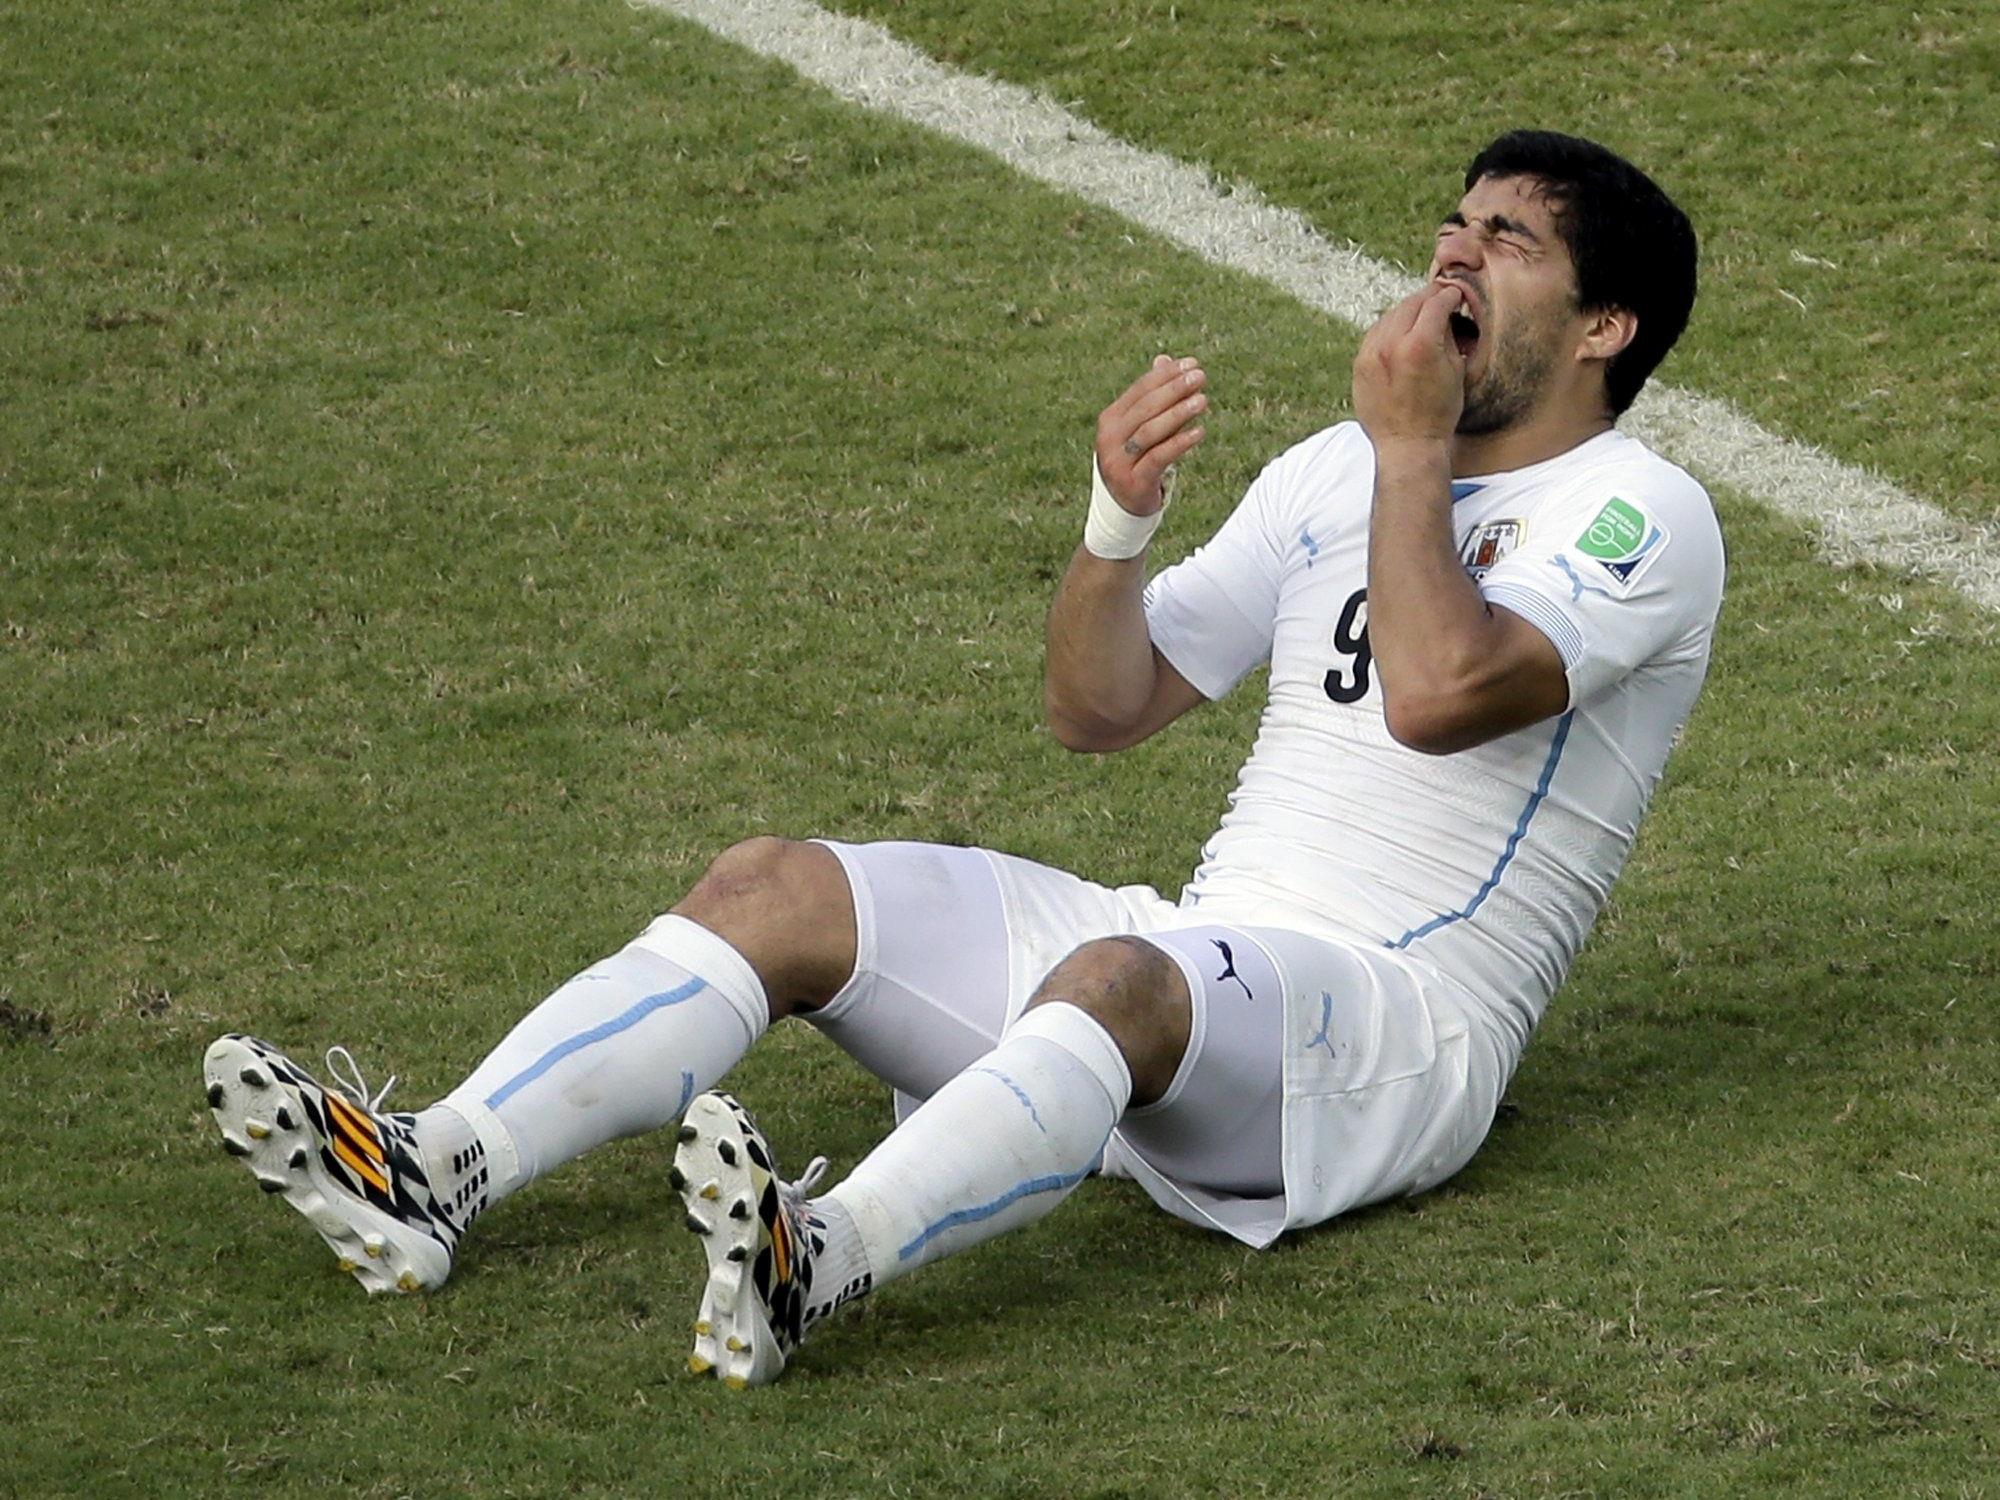 Der südamerikanische Fußball-Verband will eine Reduzierung der Strafe gegen Luis Suarez.